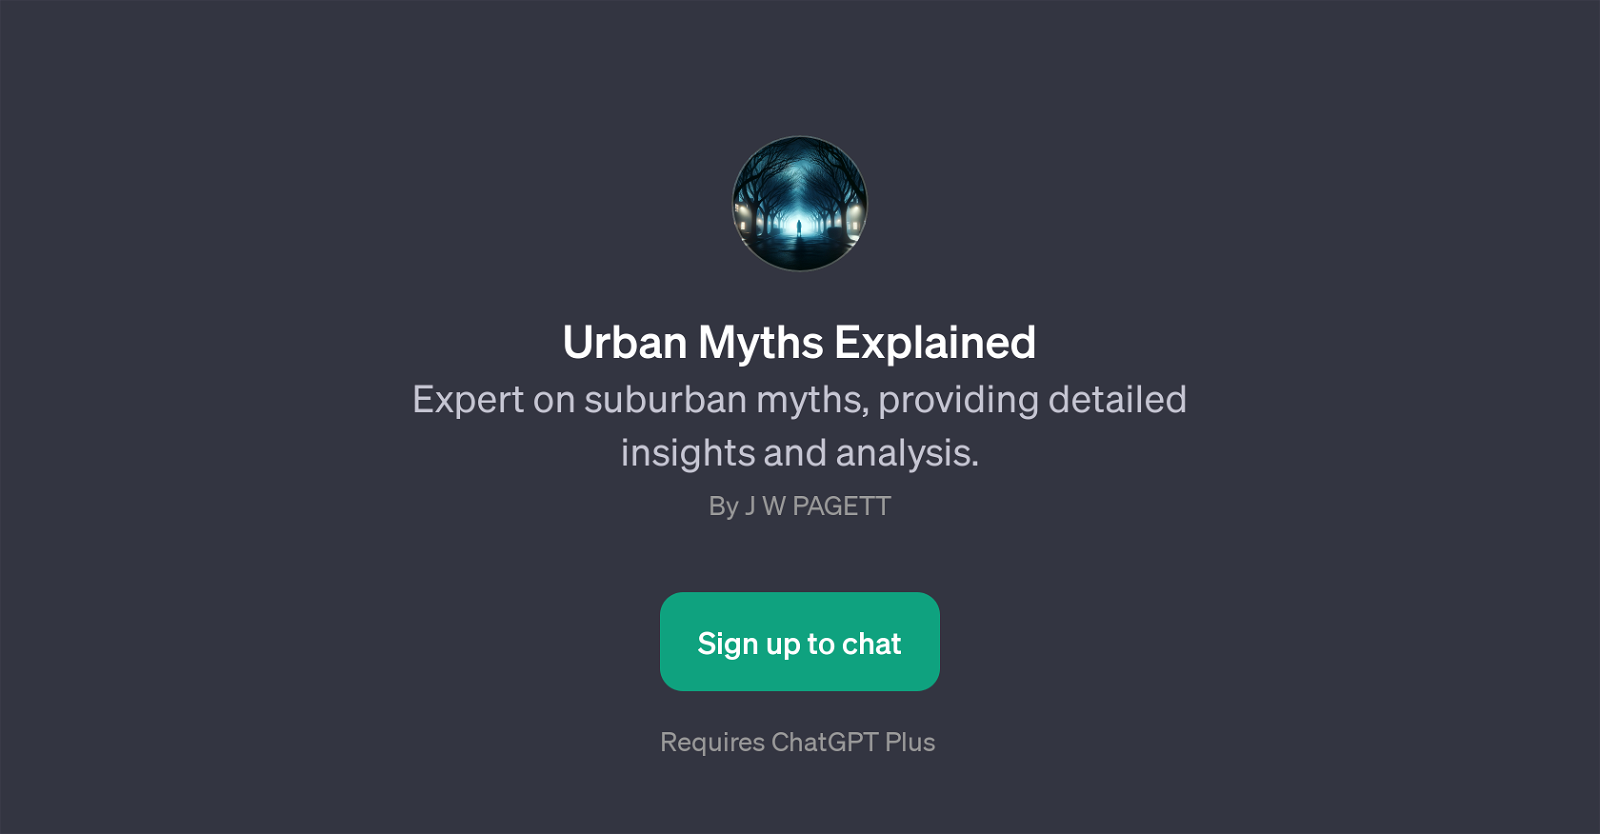 Urban Myths Explained website